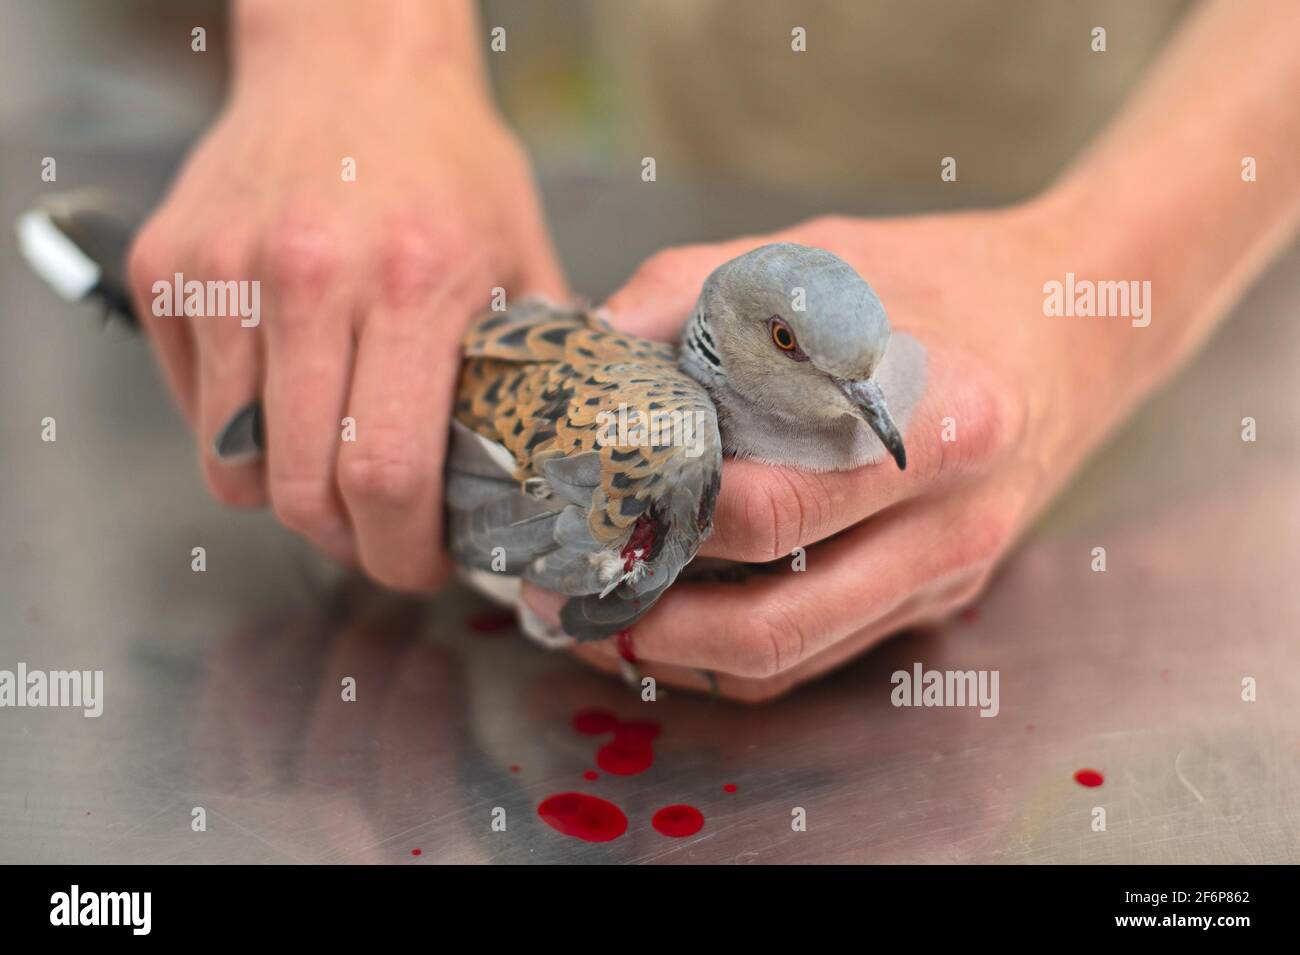 La tortue européenne Dove, Streptopelia turtur, tiré par un chasseur et wonded, a dû plus tard être euphanisé, chez Vetts, Malte, au printemps Banque D'Images